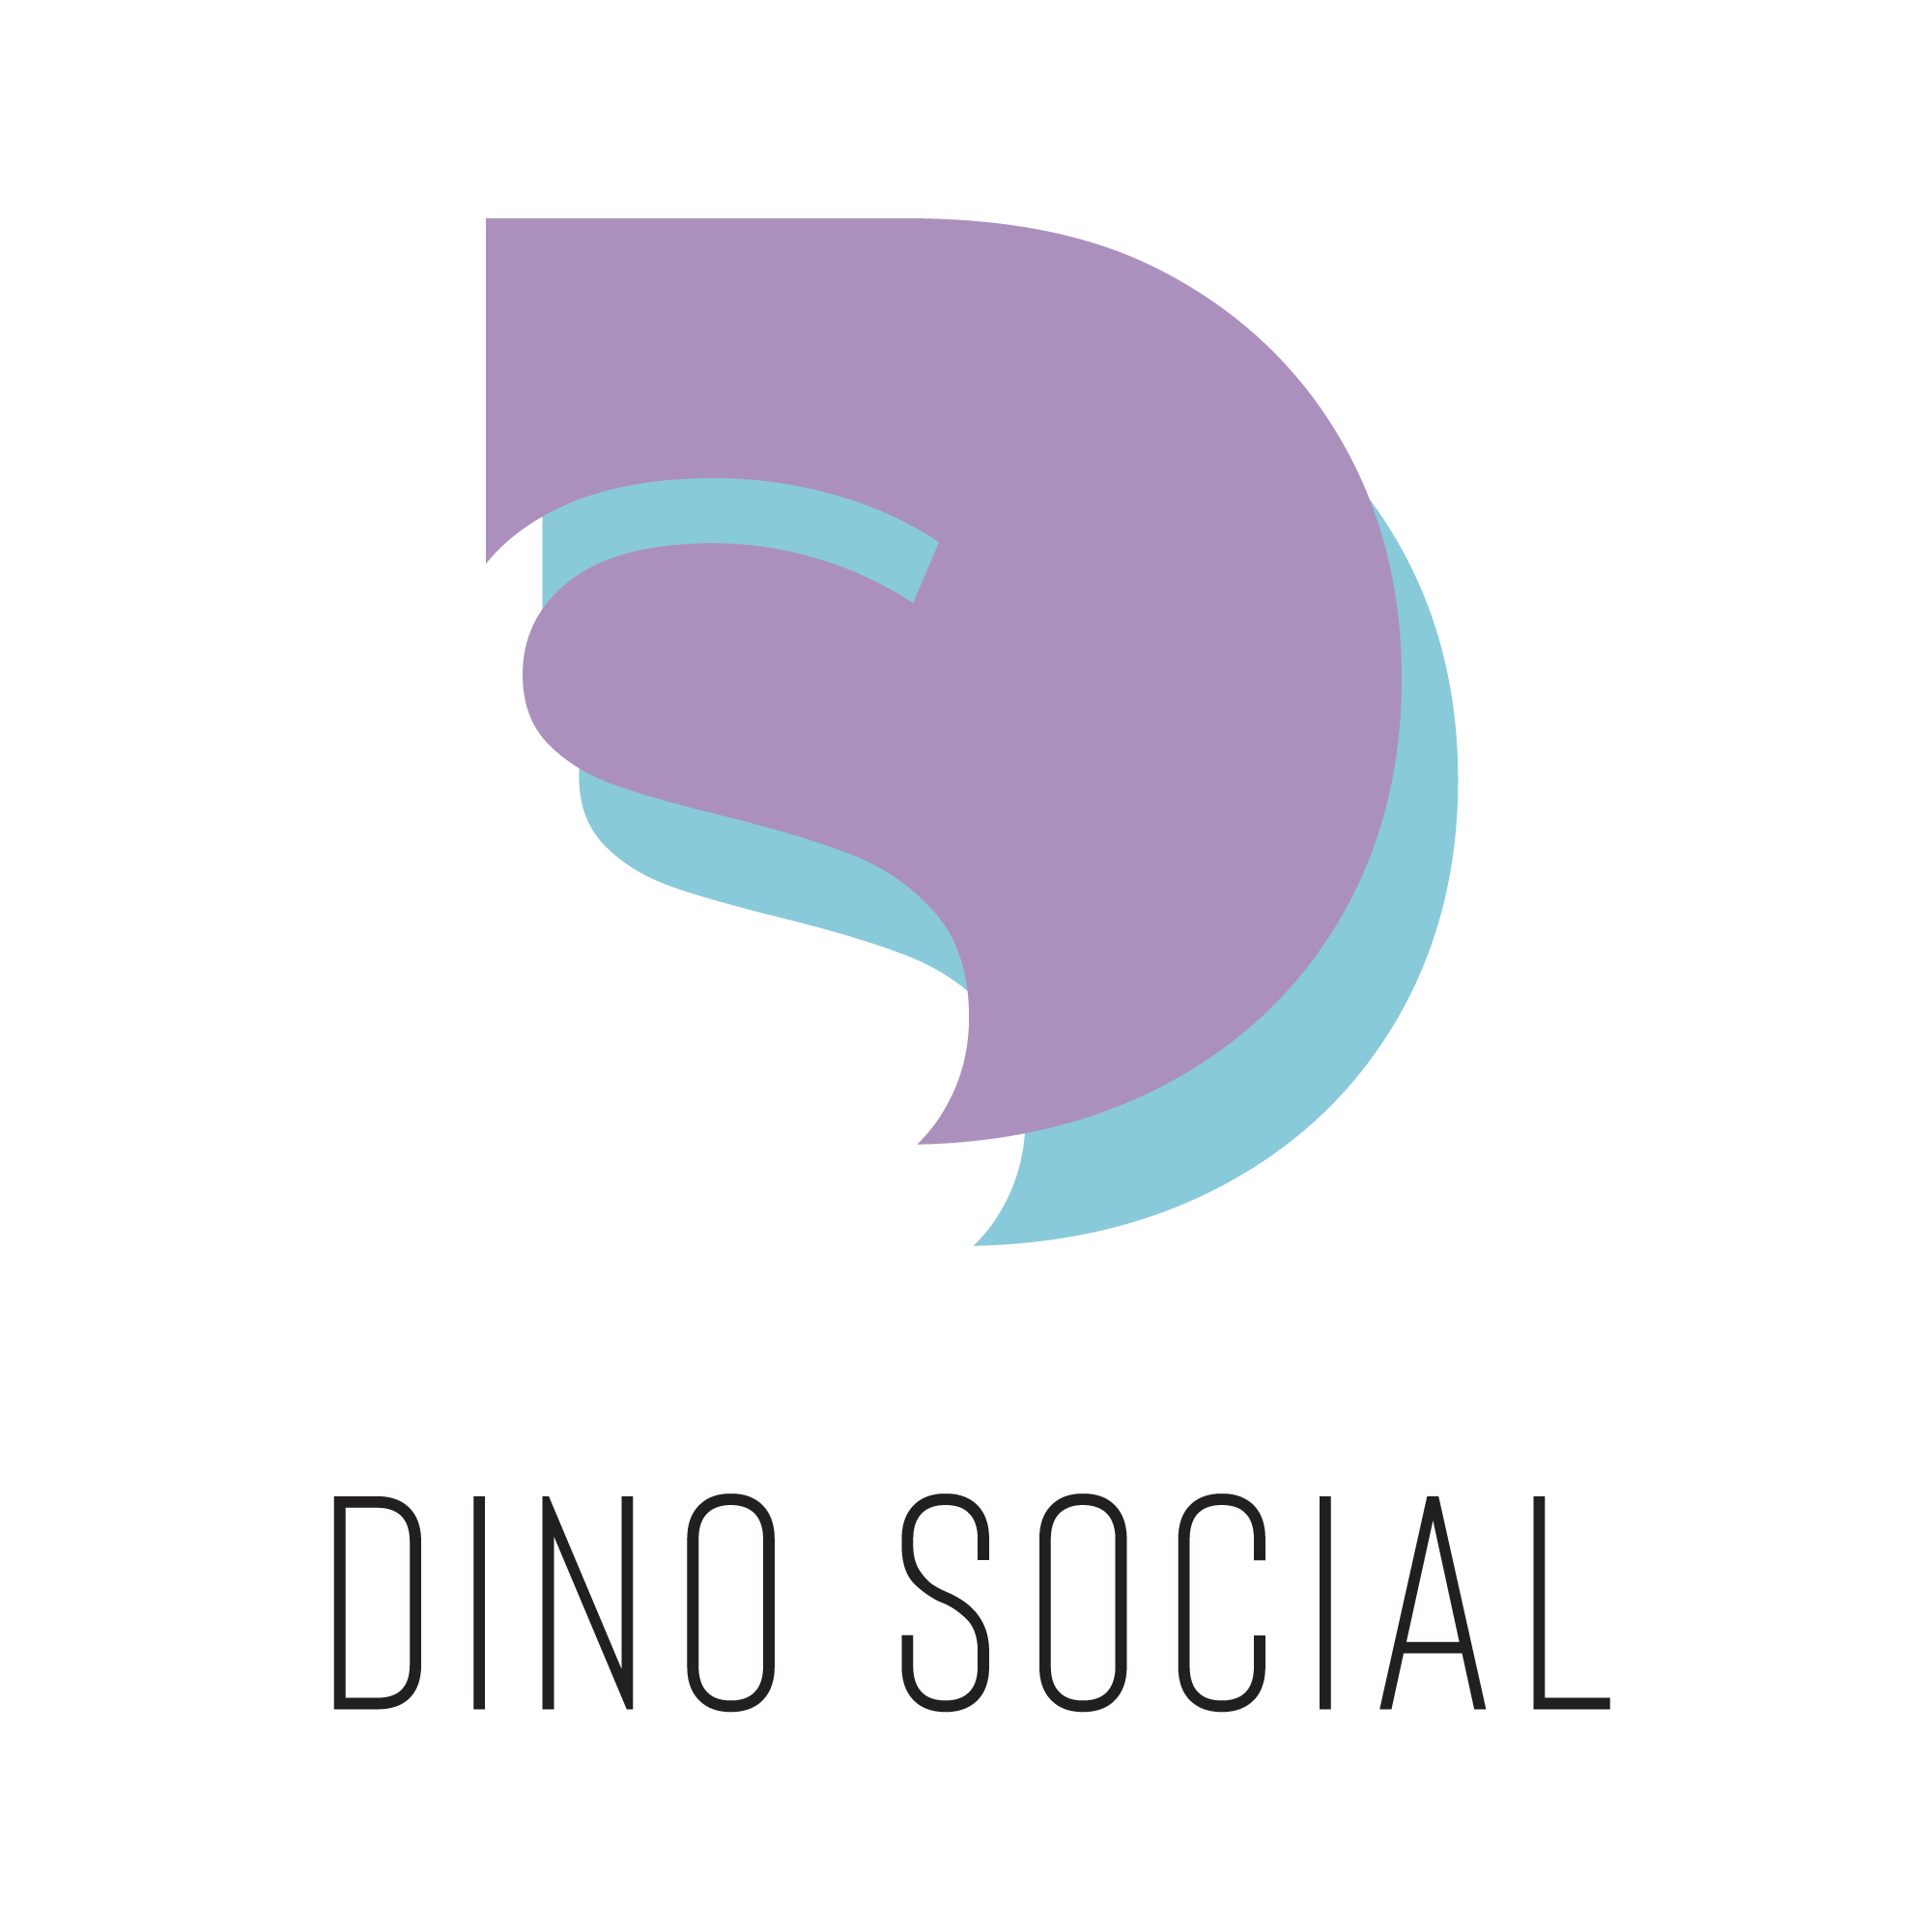 Dino Social Logo